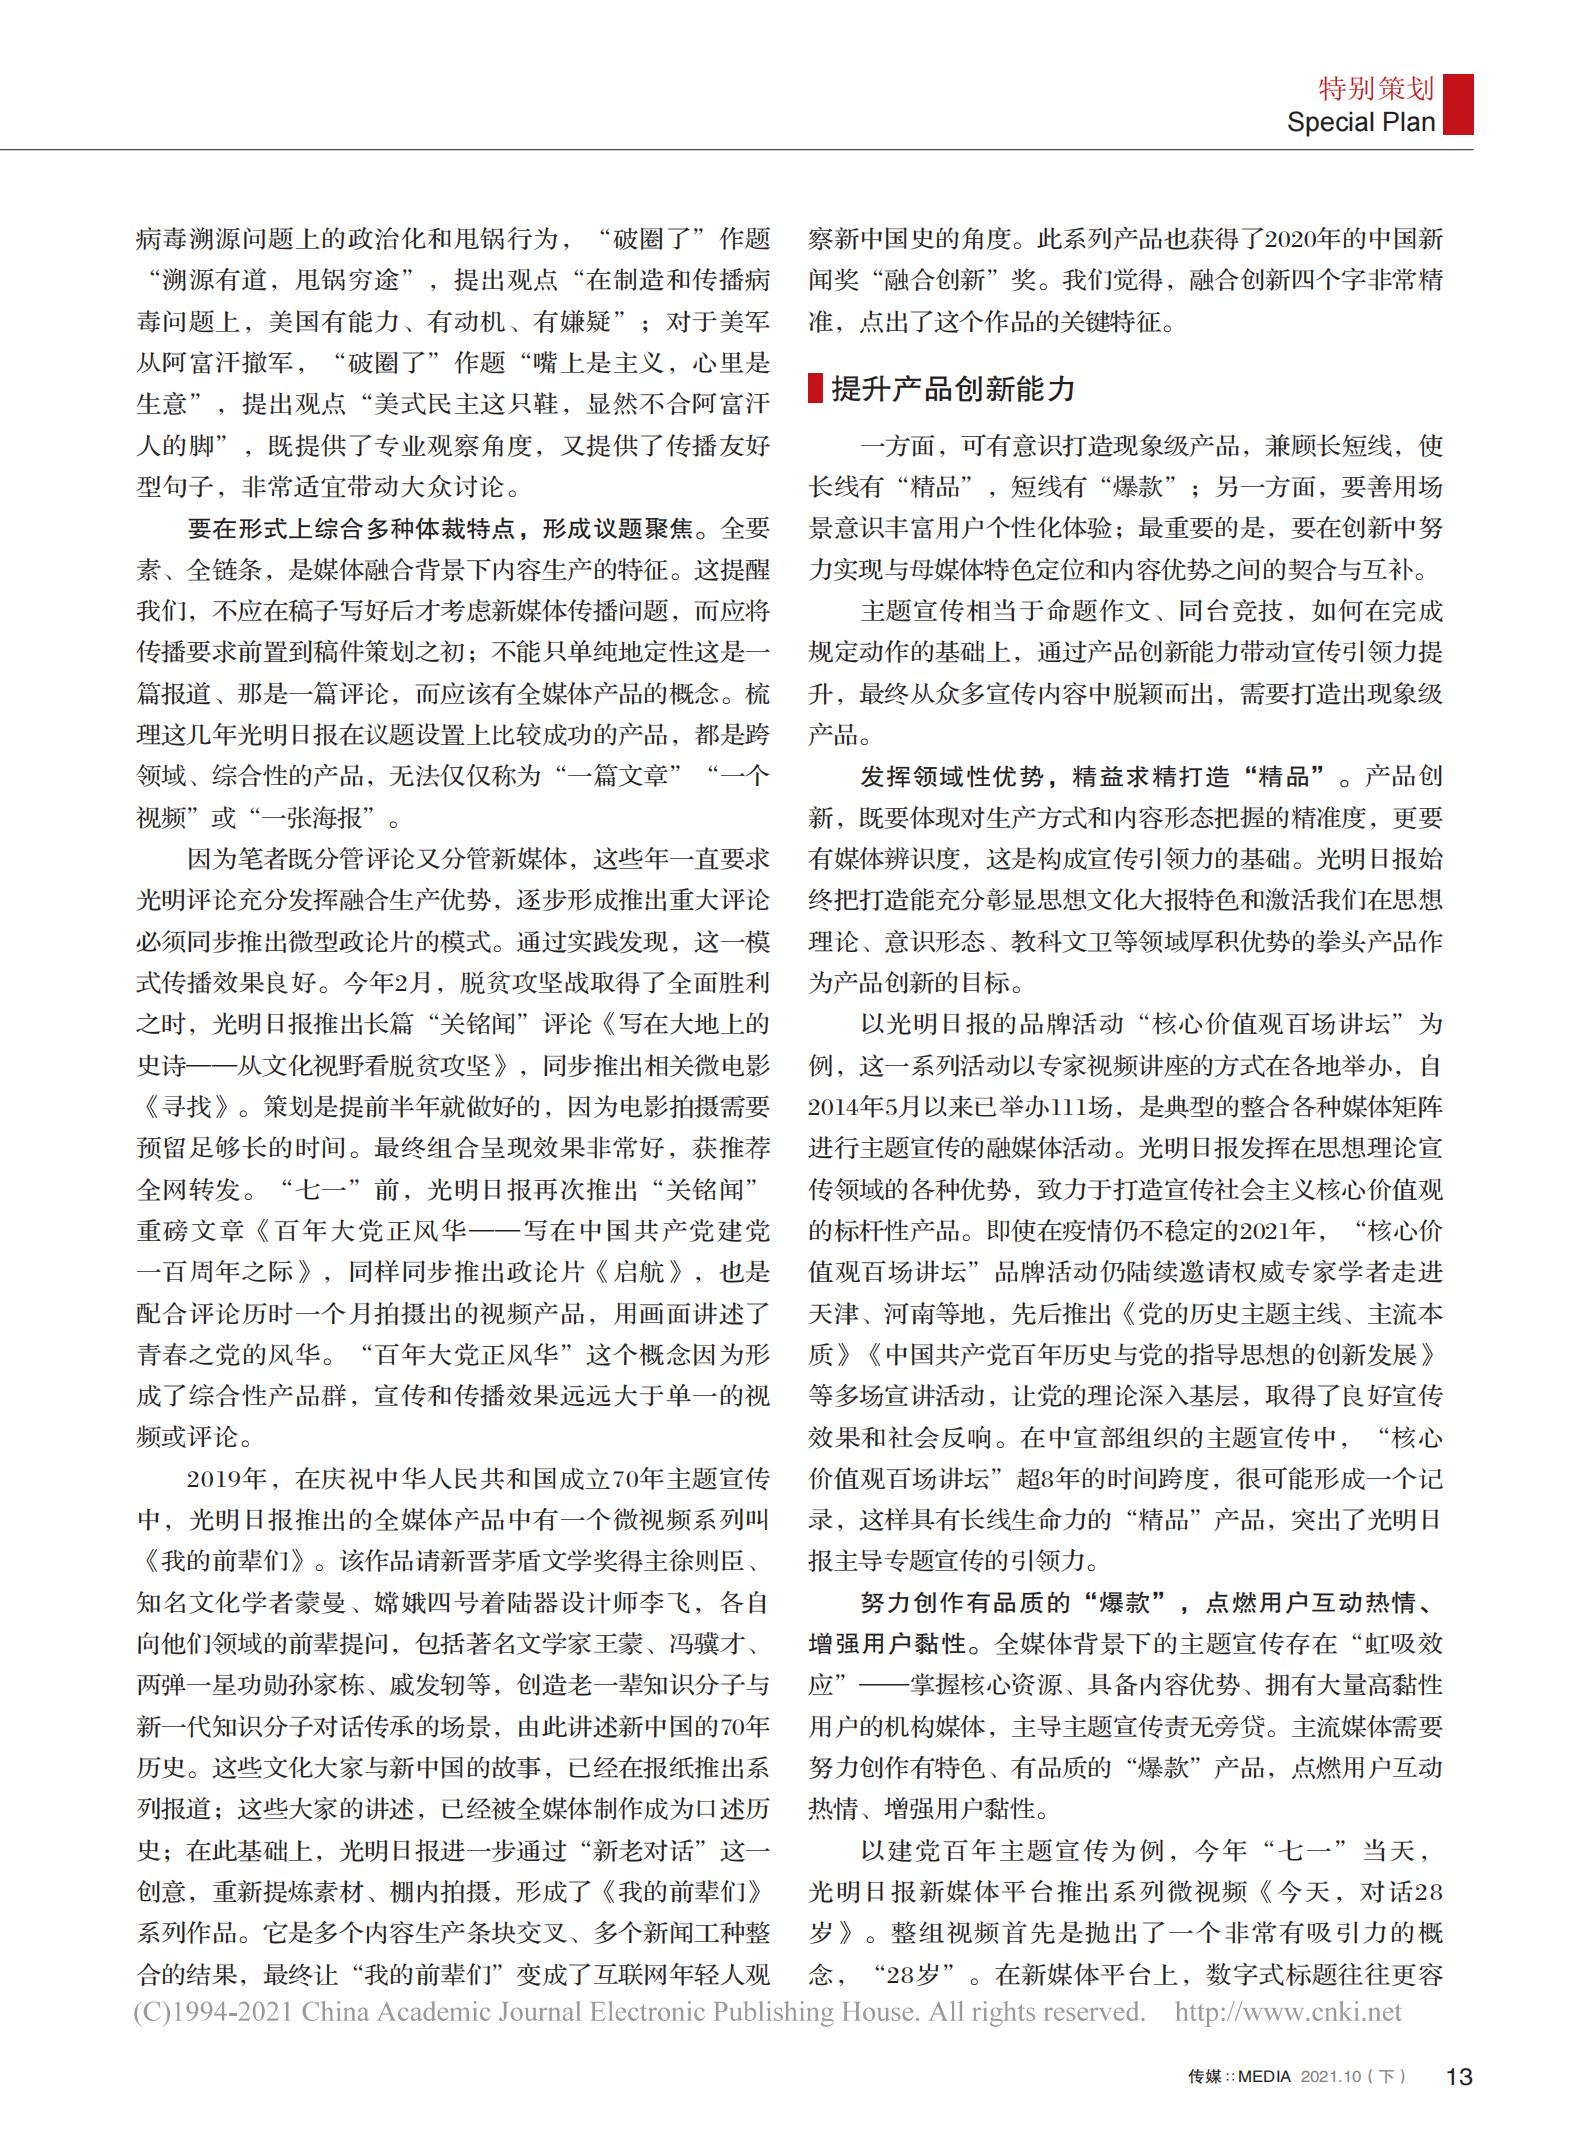 光明日报参评第三十二届中国新闻奖新闻论文作品《主流媒体如何提升主题宣传引导力》公示